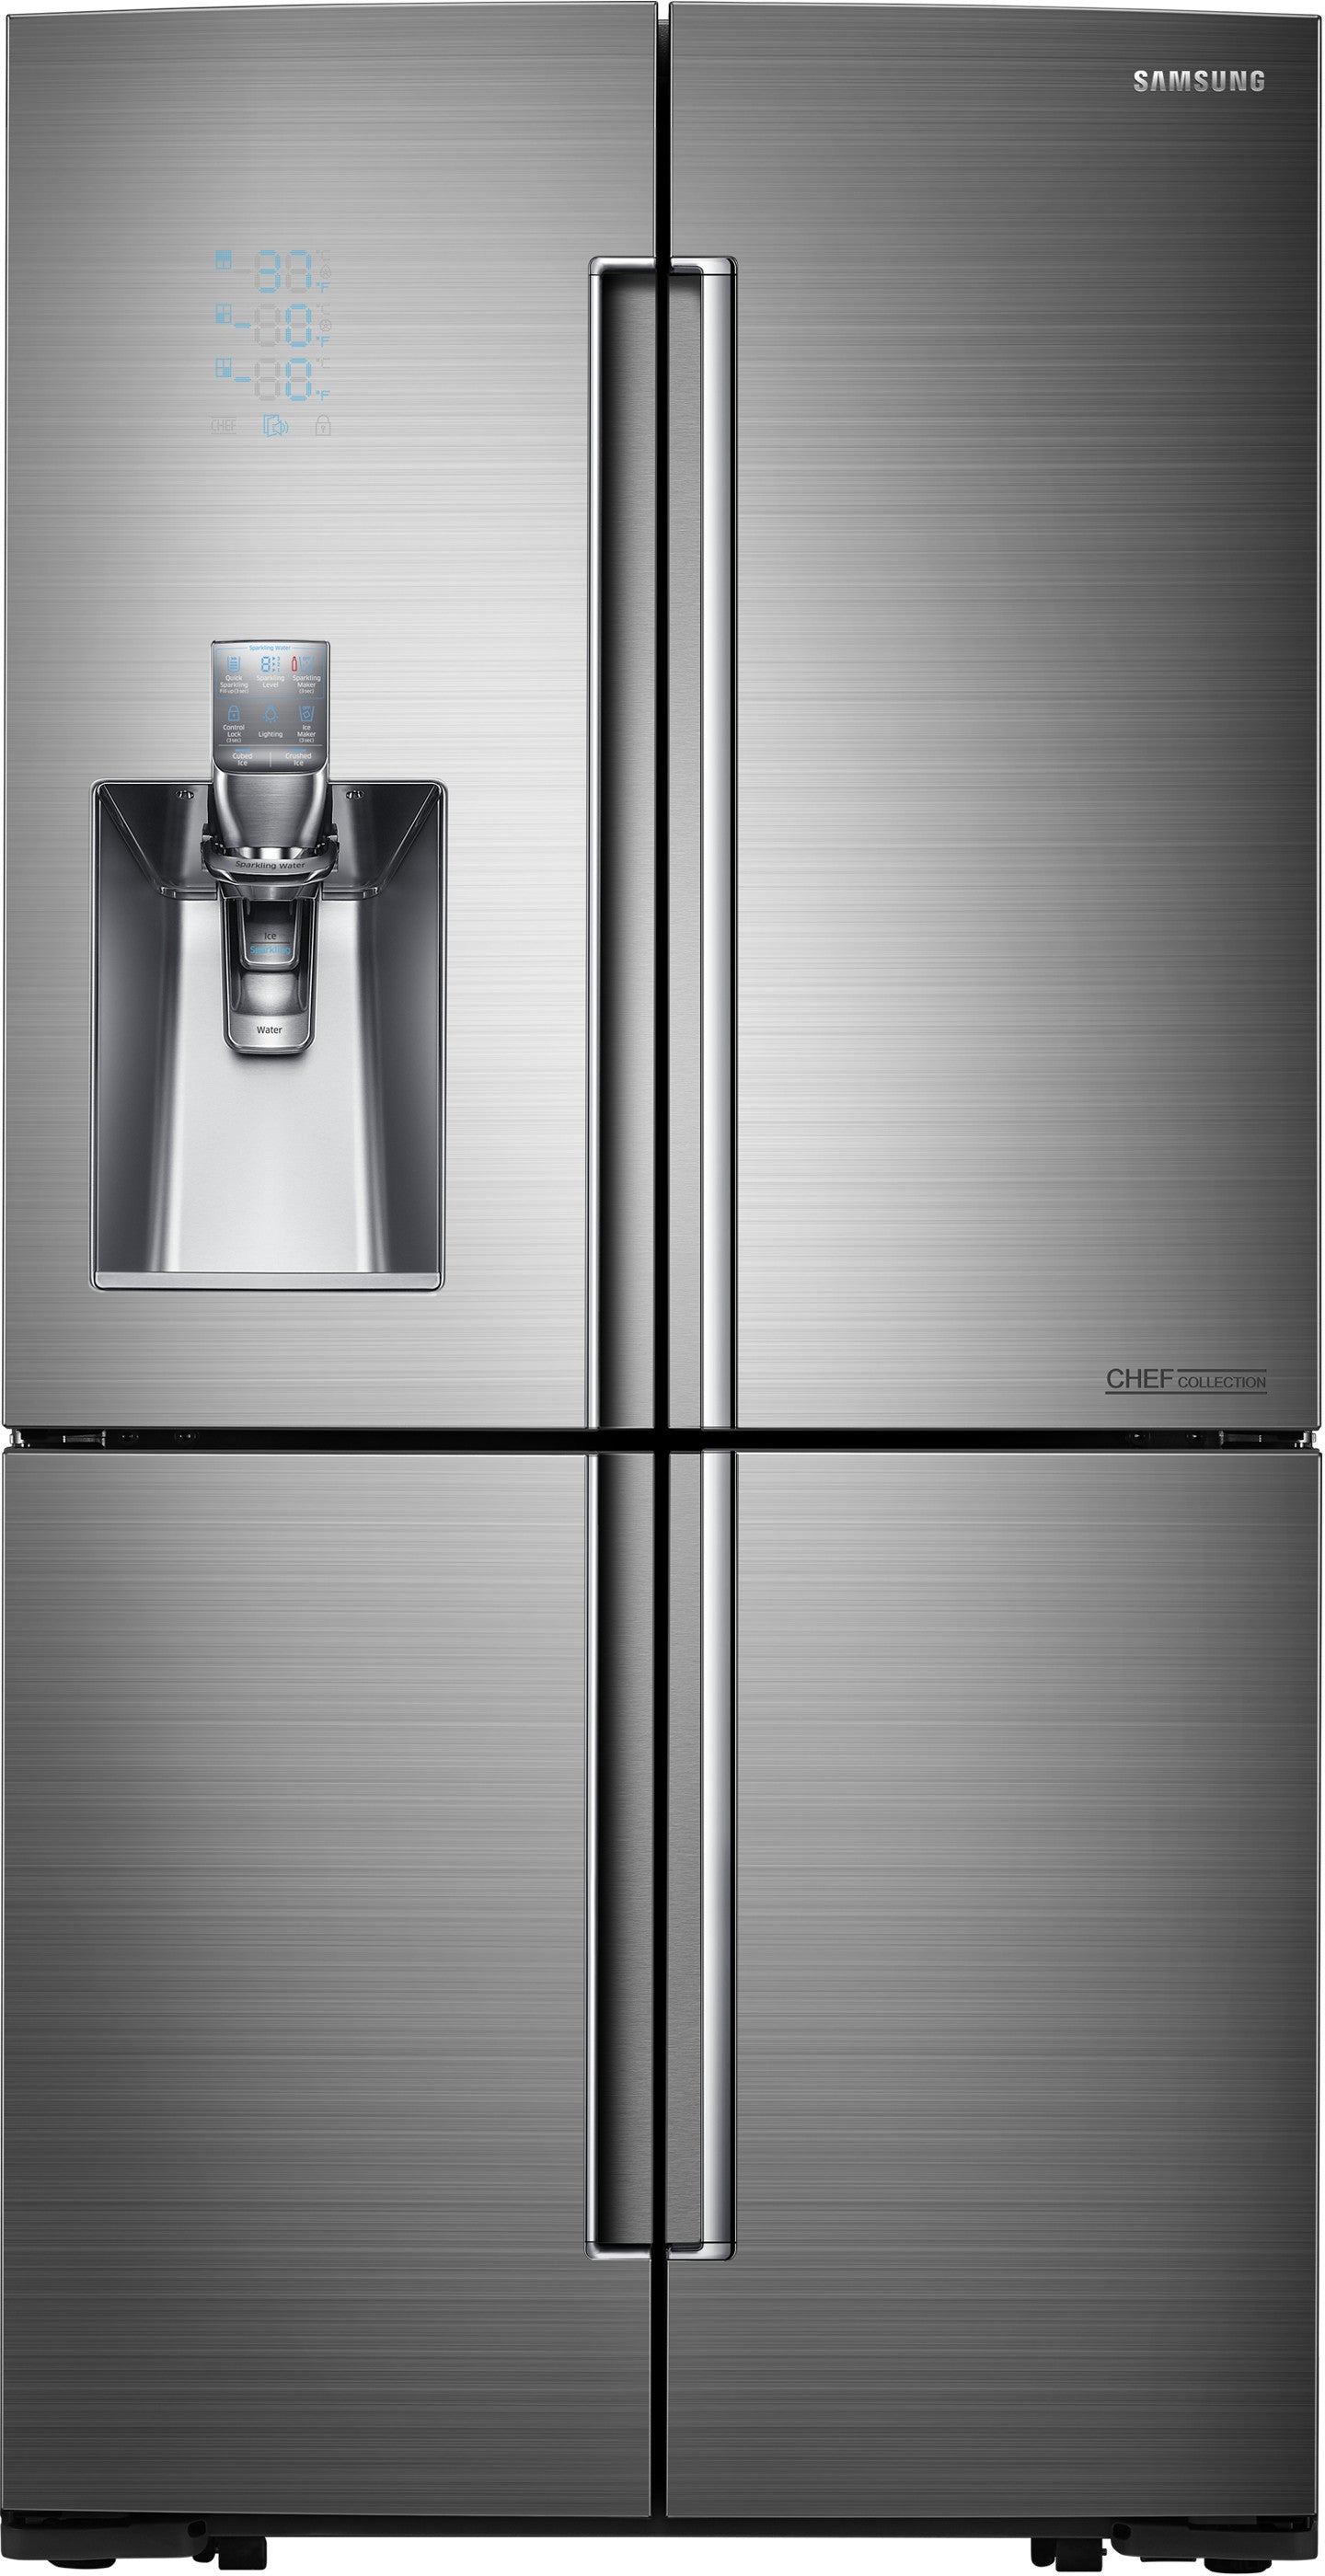 Samsung RF24J9960S4/AA 24.1 Cu. Ft. Counter Depth 4-Door Flex Refrigerator